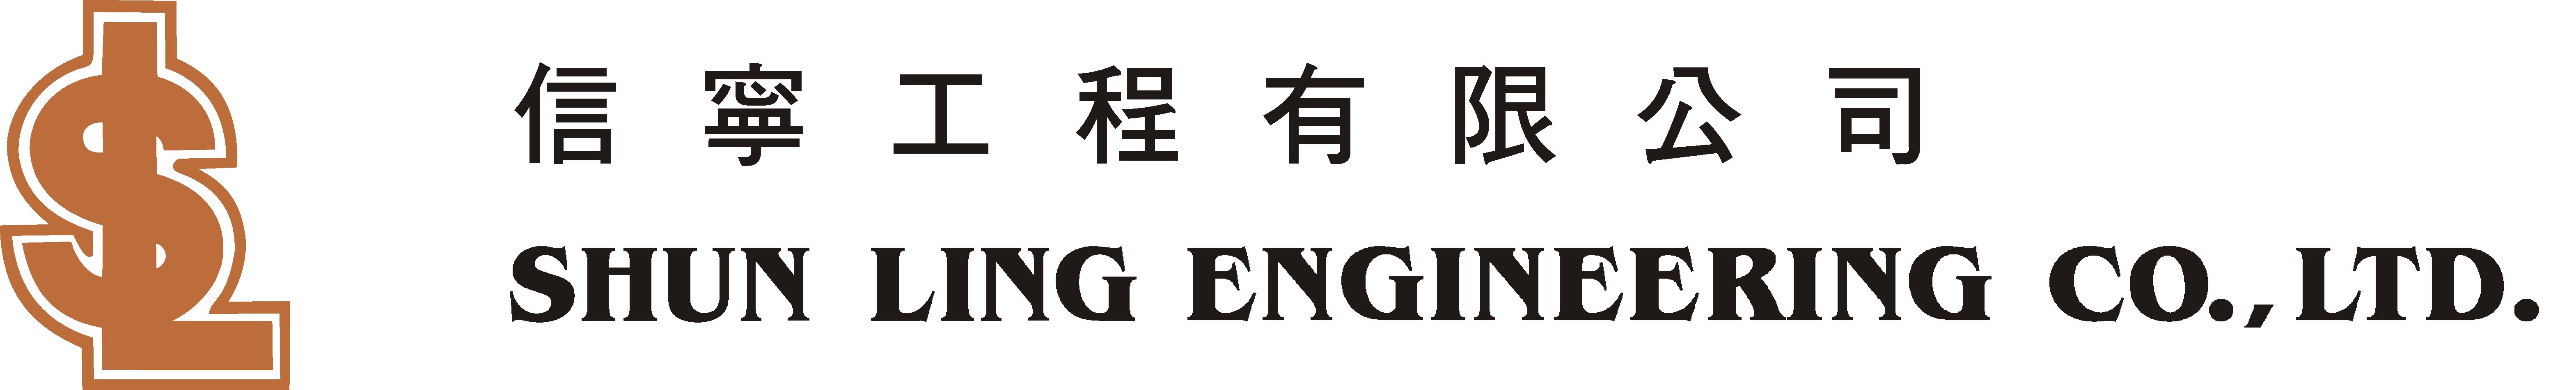 Shun Ling Logo.jpg